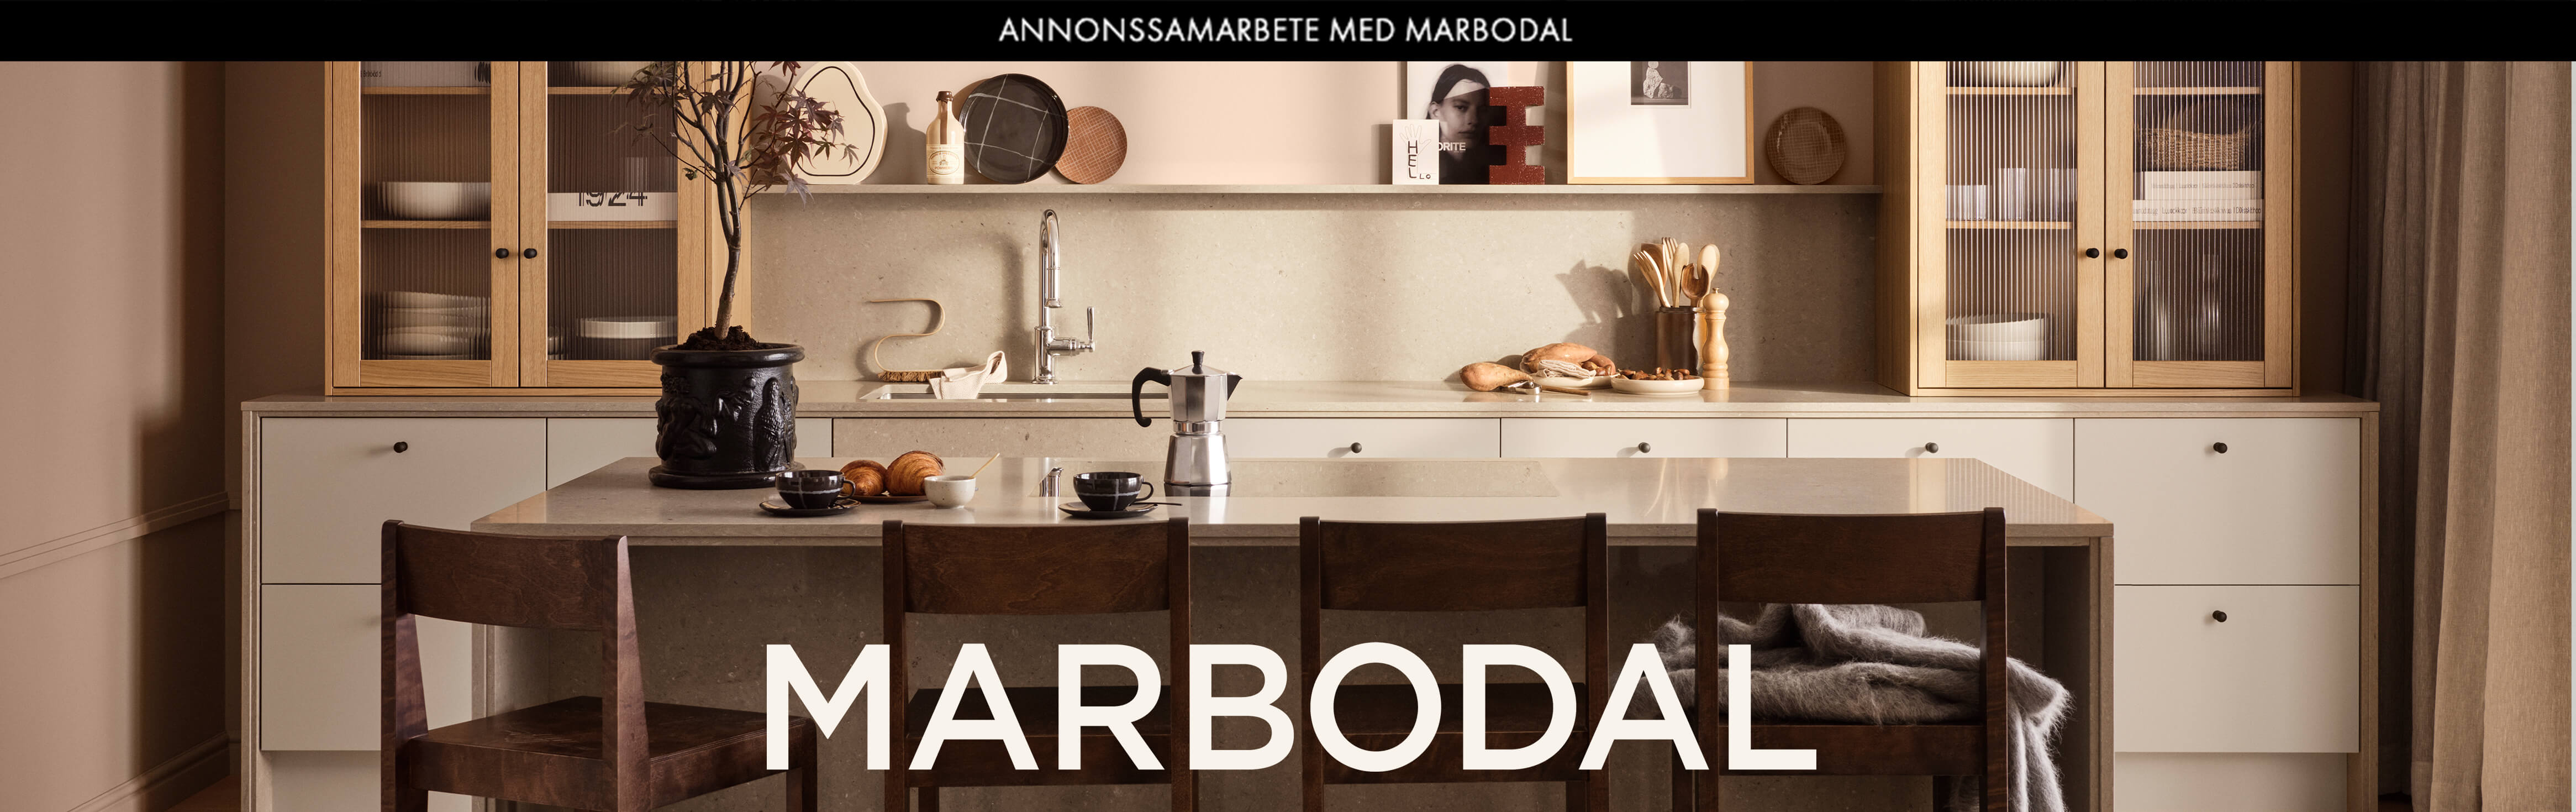 Hos Marbodal finns kök med köksluckor, köksskåp och helhetslösningar, samt även garderober. Från pris till inspiration - här hittar du allt om kök från Marbodal.